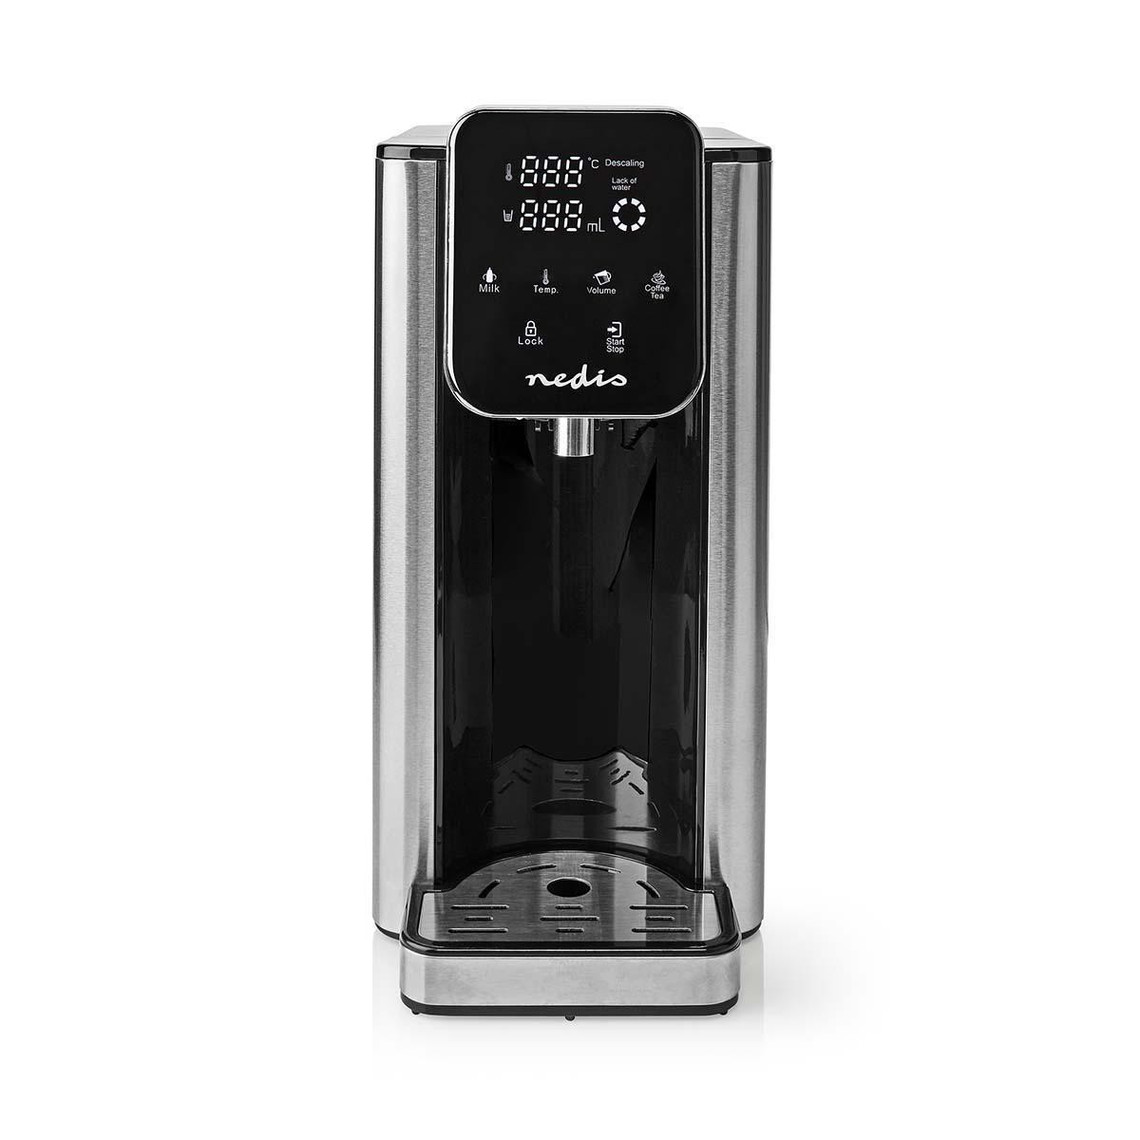 Nedis Distributeur d'eau chaude - KAWD300FBK - Argent/Noir